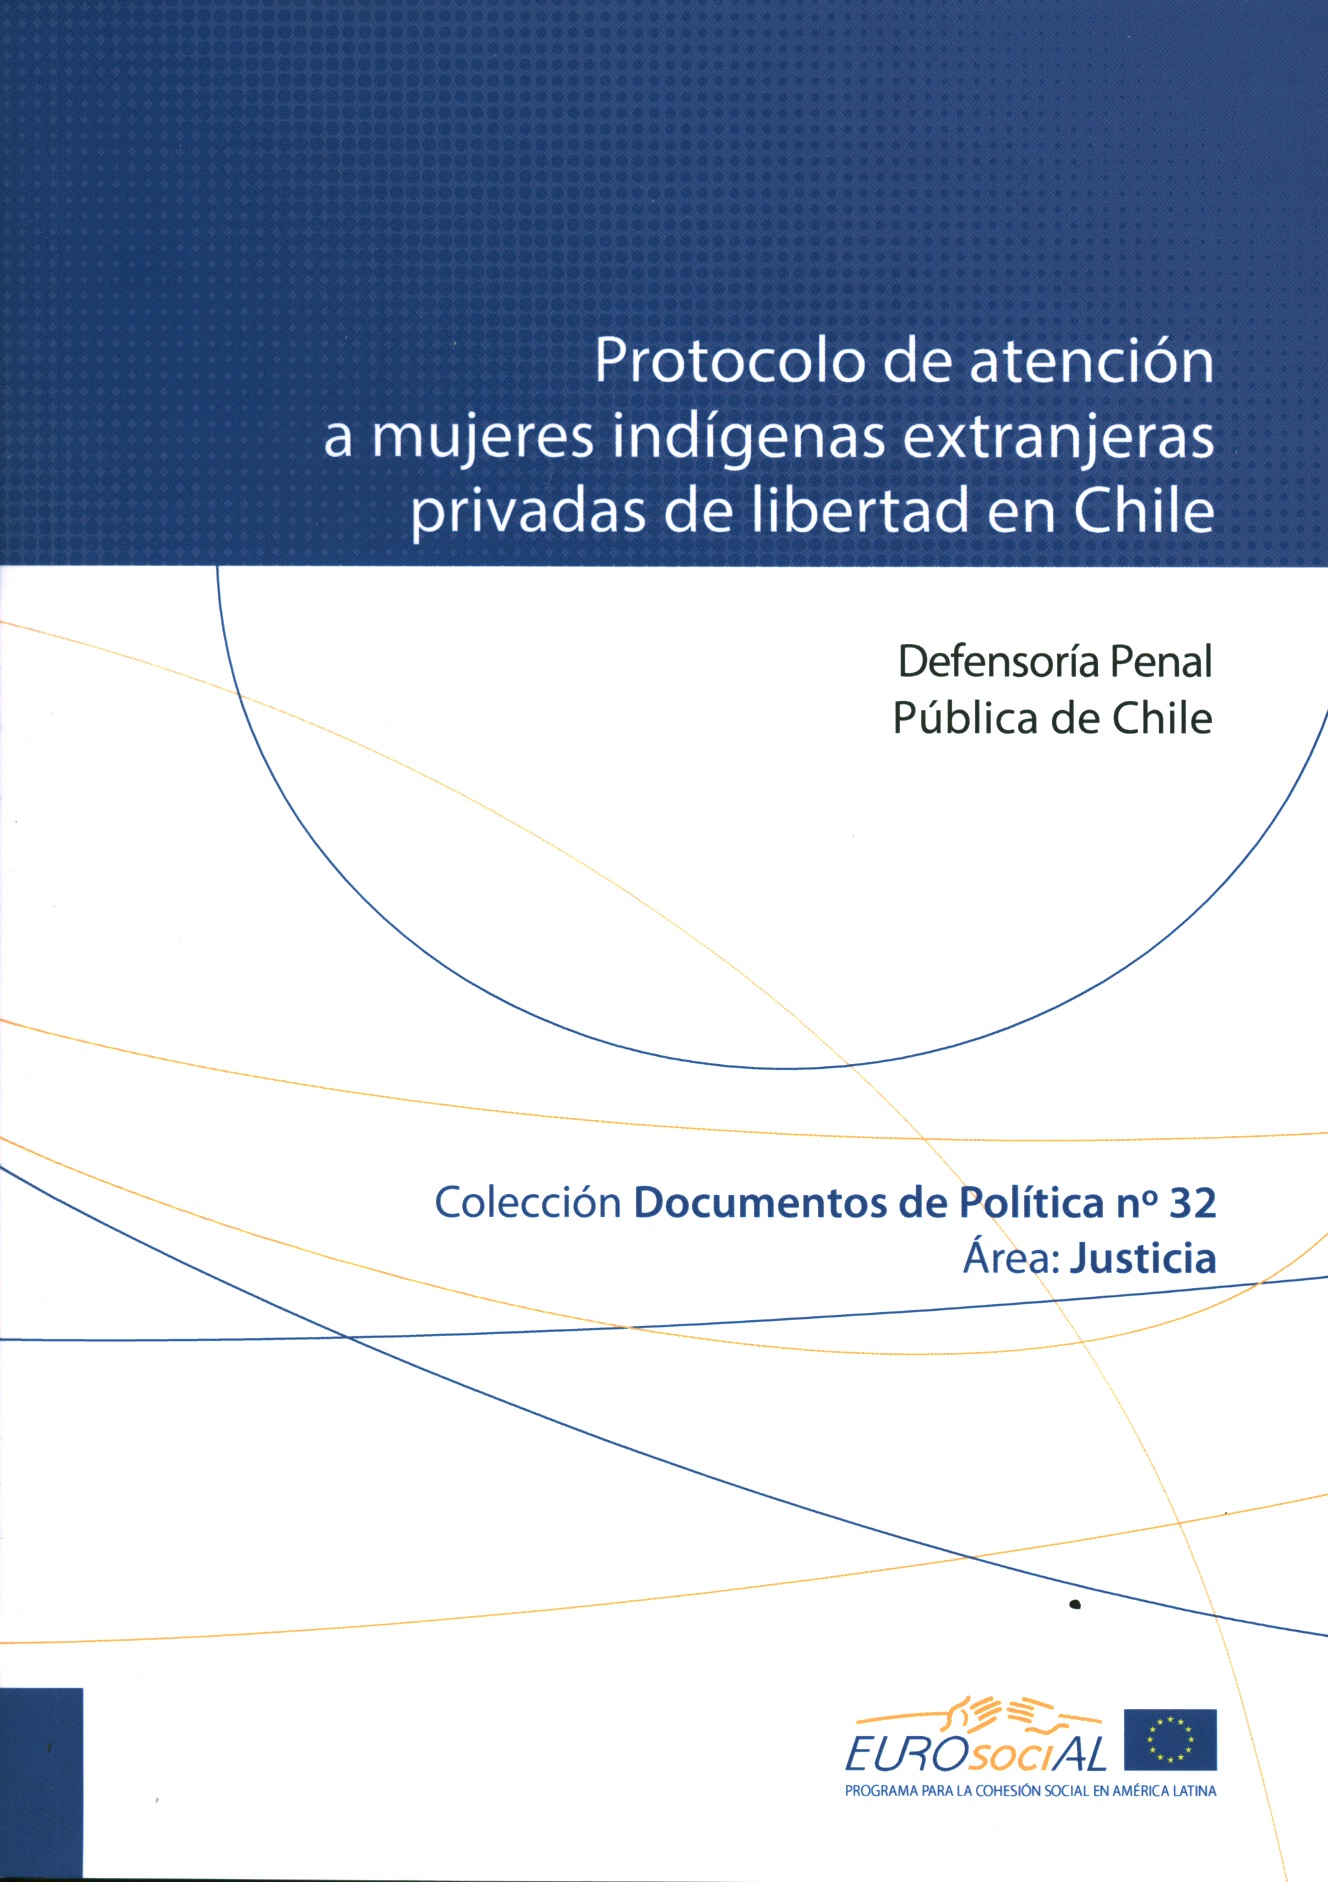 Protocolo de atención a mujeres indígenas extranjeras privadas de libertad en Chile